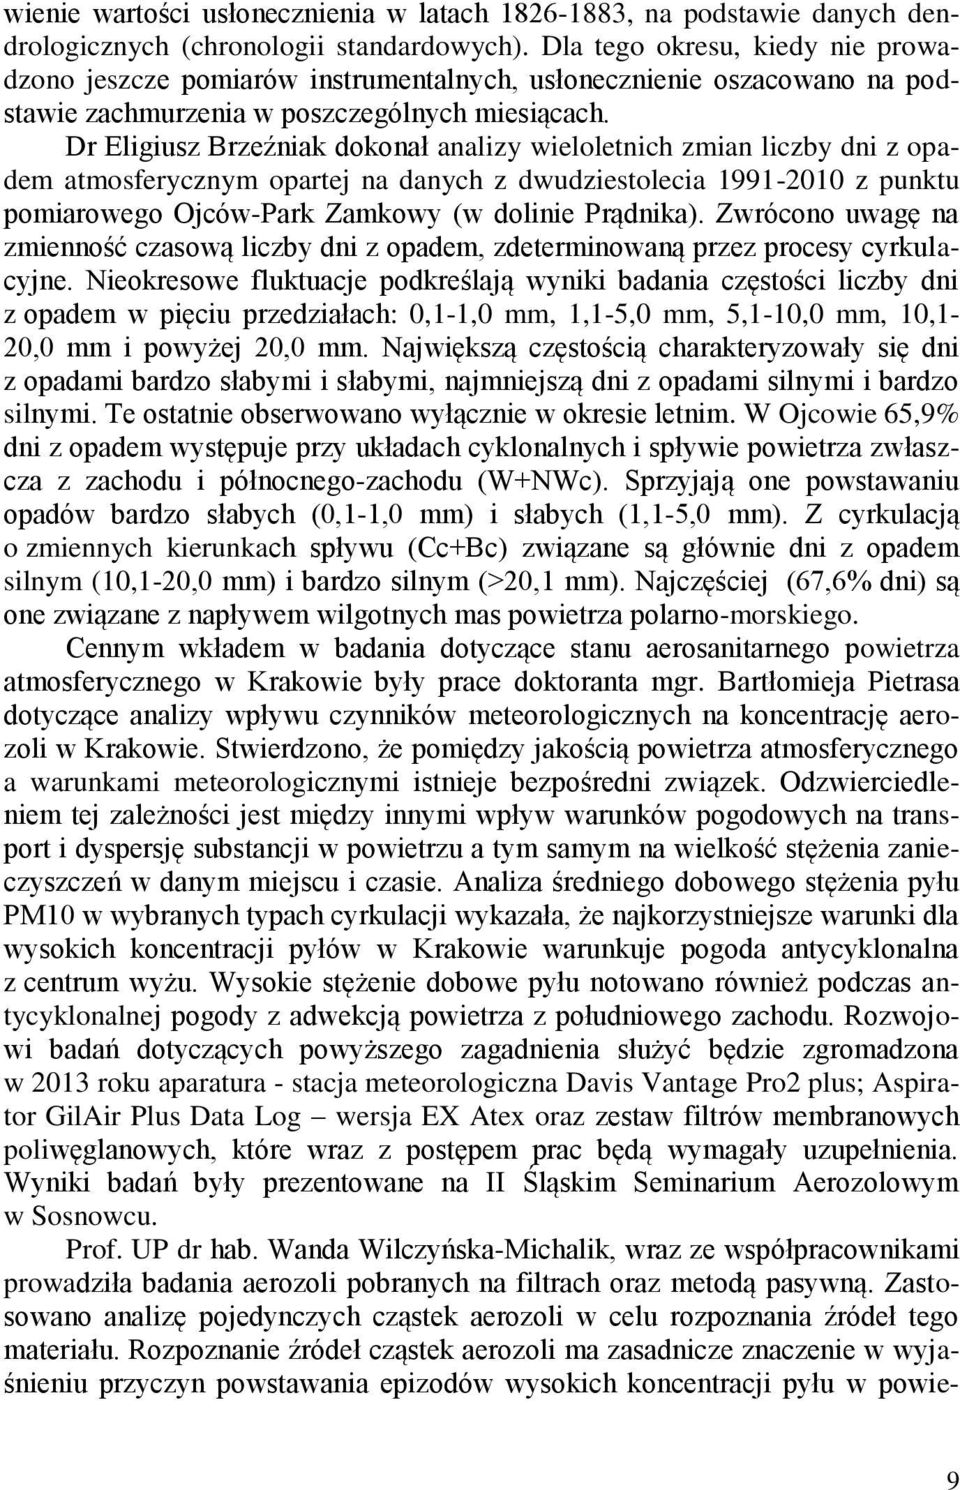 Dr Eligiusz Brzeźniak dokonał analizy wieloletnich zmian liczby dni z opadem atmosferycznym opartej na danych z dwudziestolecia 1991-2010 z punktu pomiarowego Ojców-Park Zamkowy (w dolinie Prądnika).